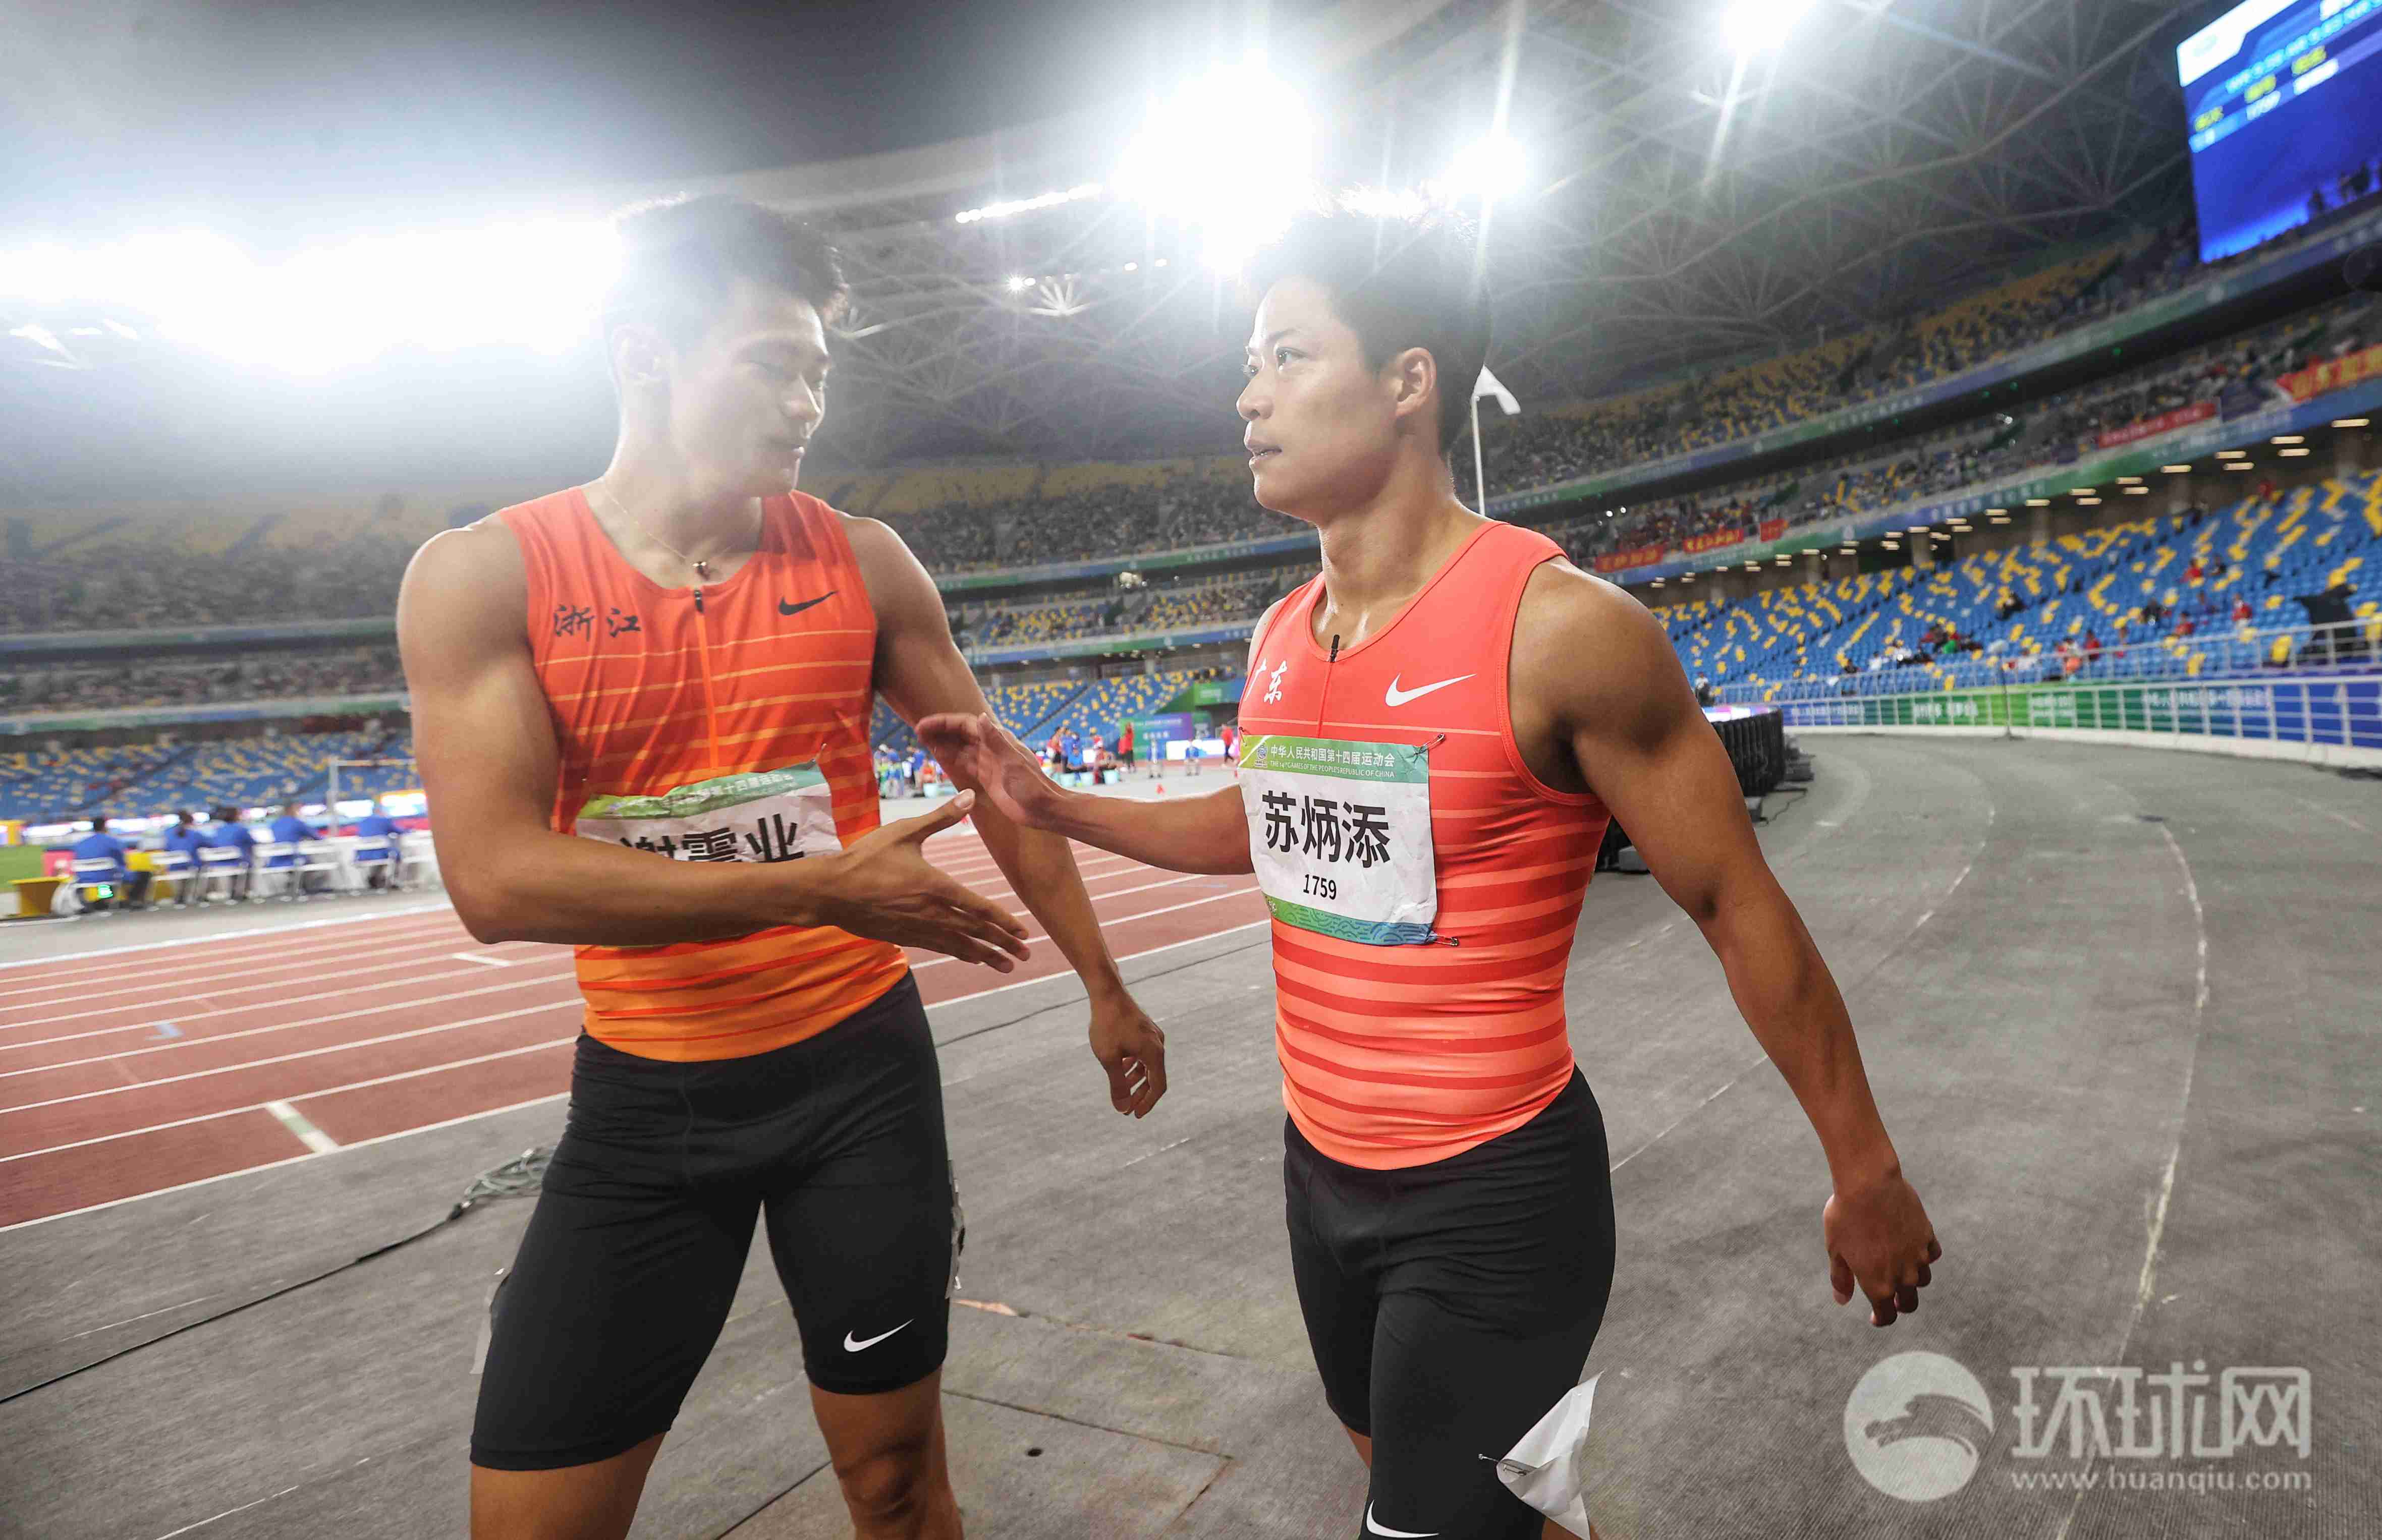 【图集】全运会男子百米半决赛,苏炳添成功晋级决赛